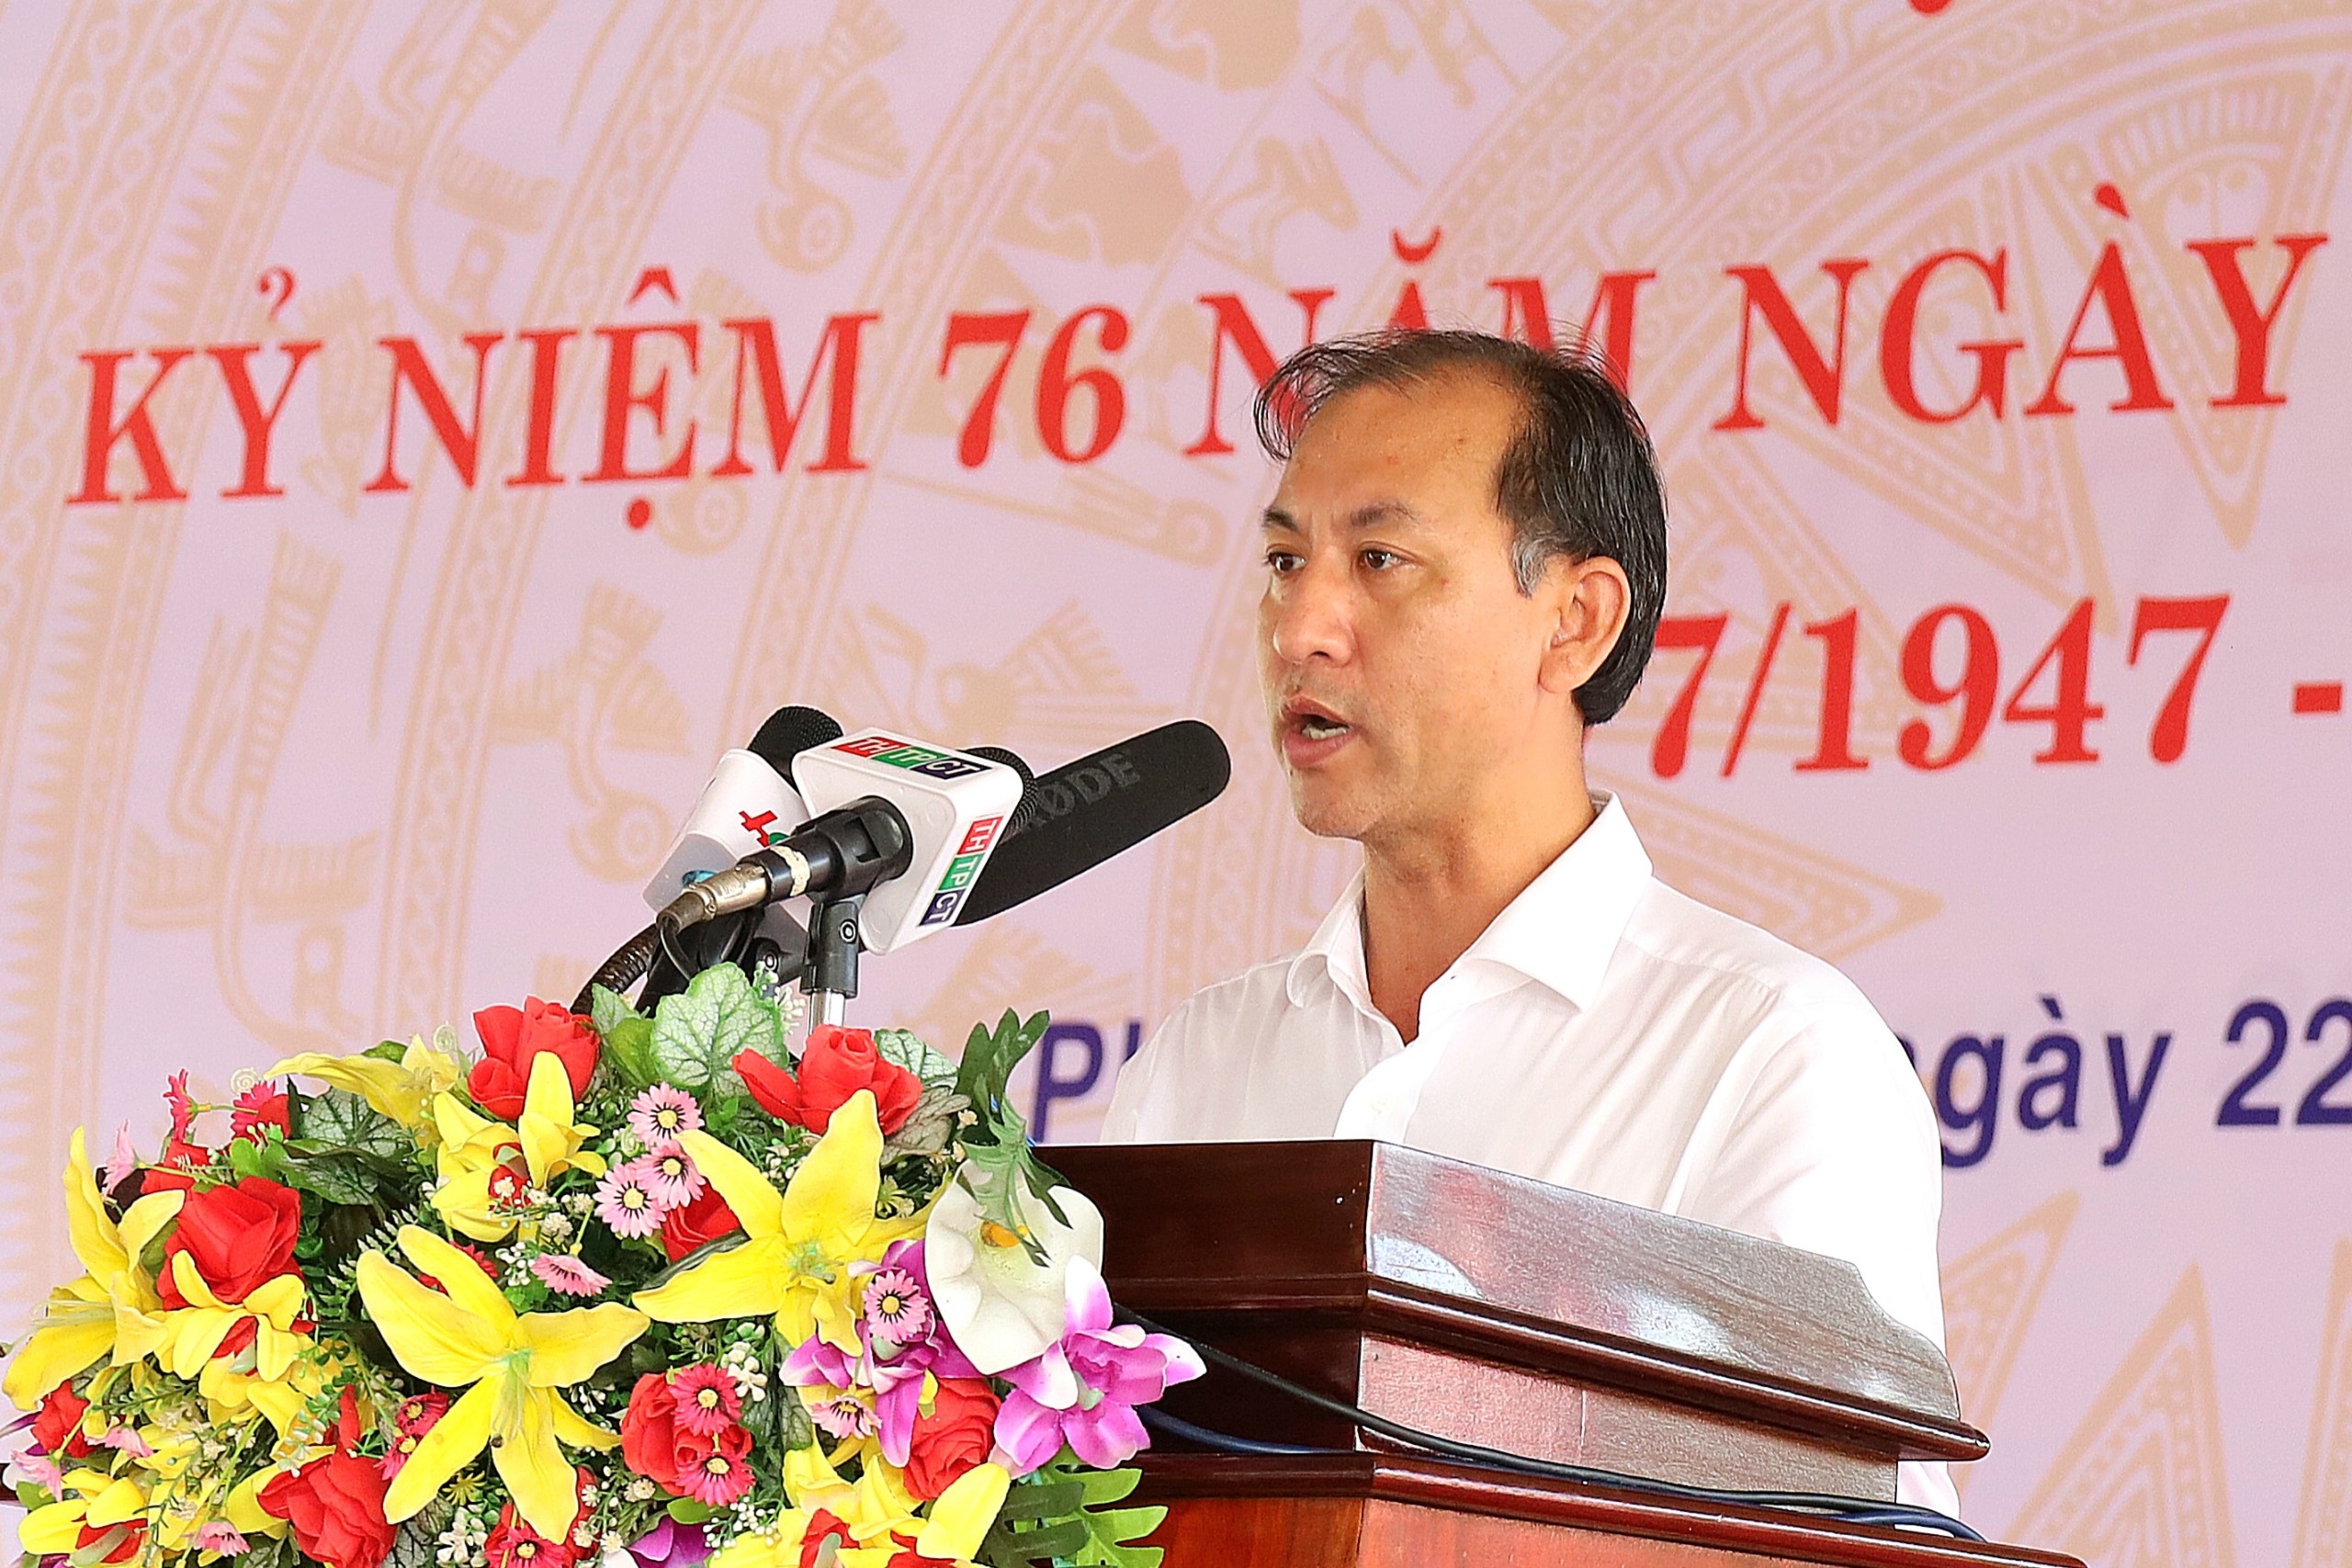 Ông Nguyễn Trung Nghĩa - Phó Bí thư Huyện ủy, Chủ tịch Ủy ban nhân dân huyện Phong Điền, TP. Cần Thơ phát biểu tại chương trình.